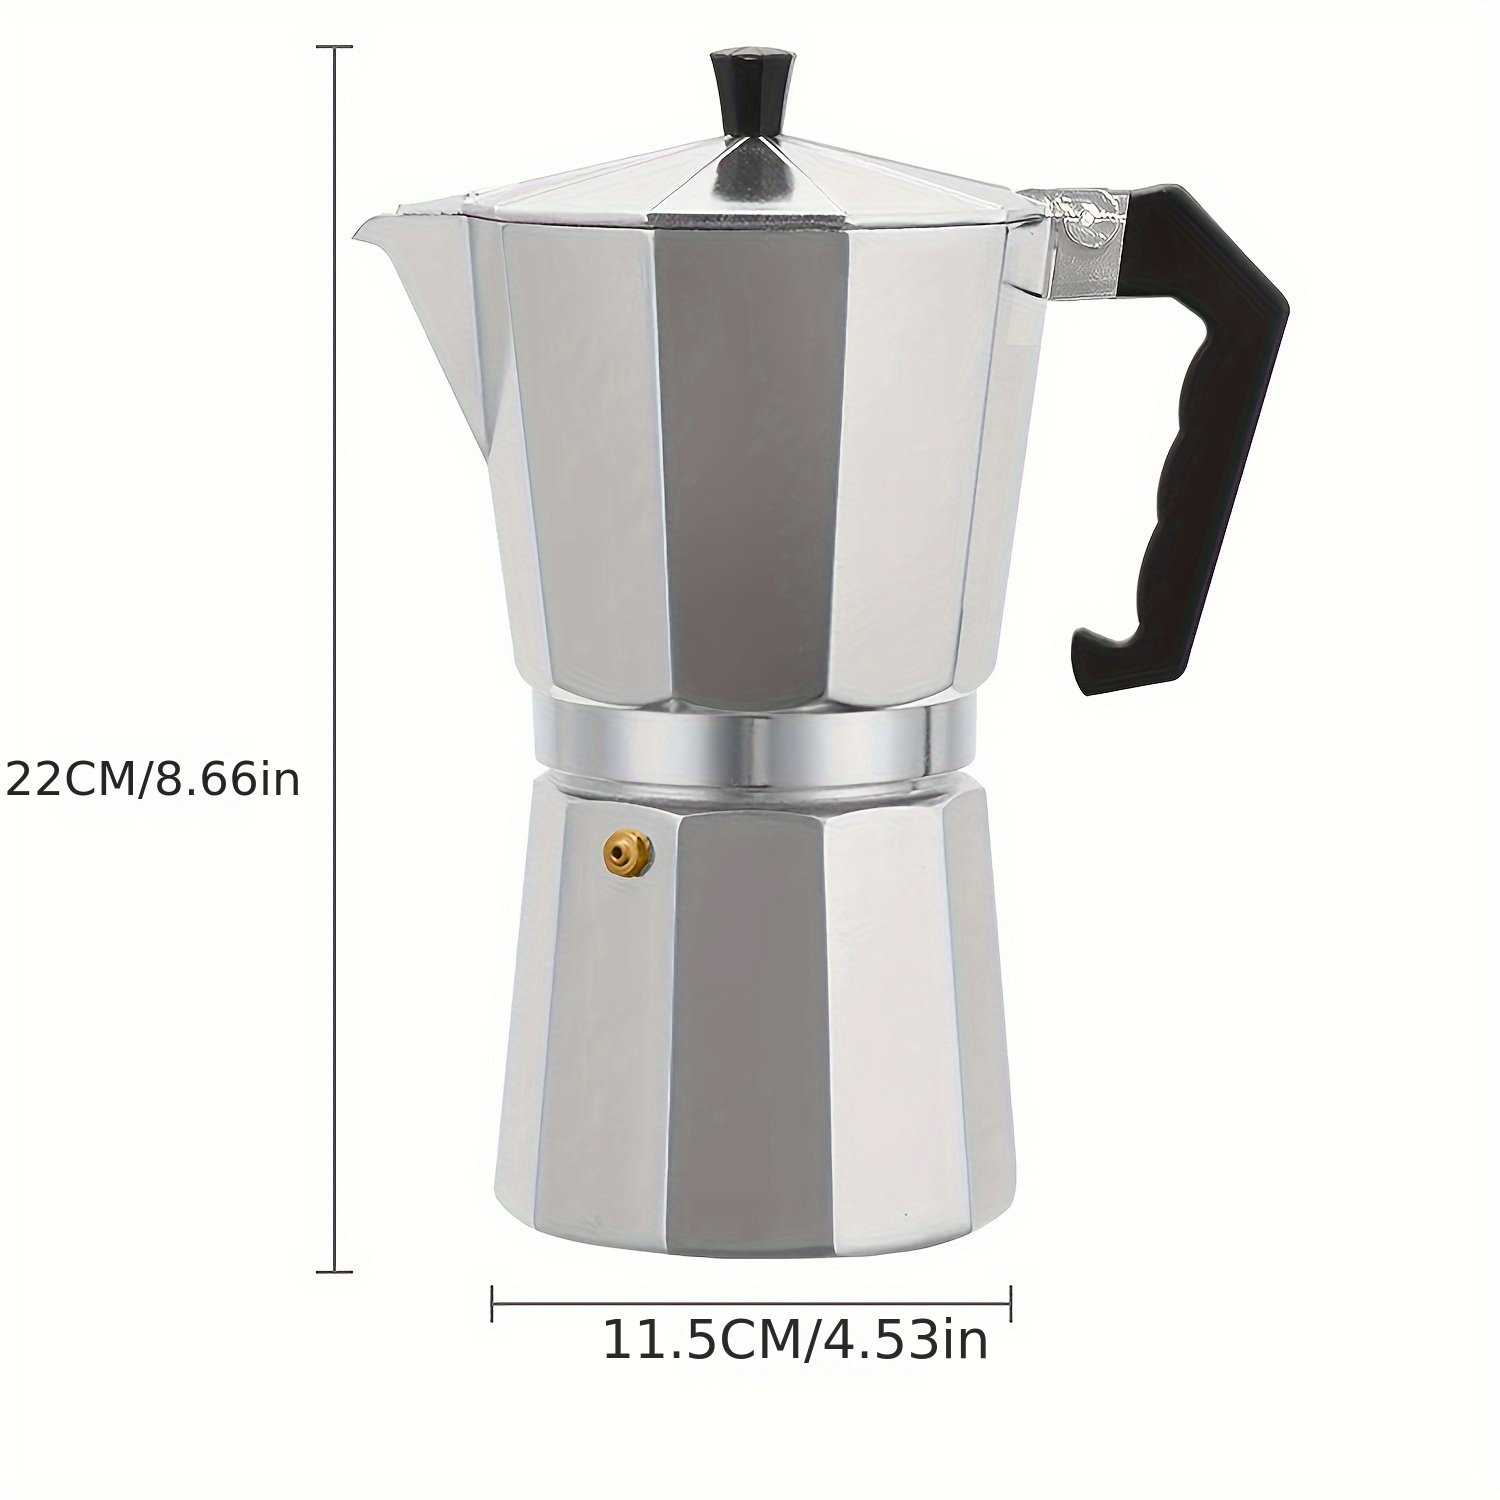 Espresso Maker, Single Spout Stovetop Moka Pot Stainless Steel Mini Stovetop Espresso Percolator Italian Type Espresso Cup Coffee Maker,Use on Stove